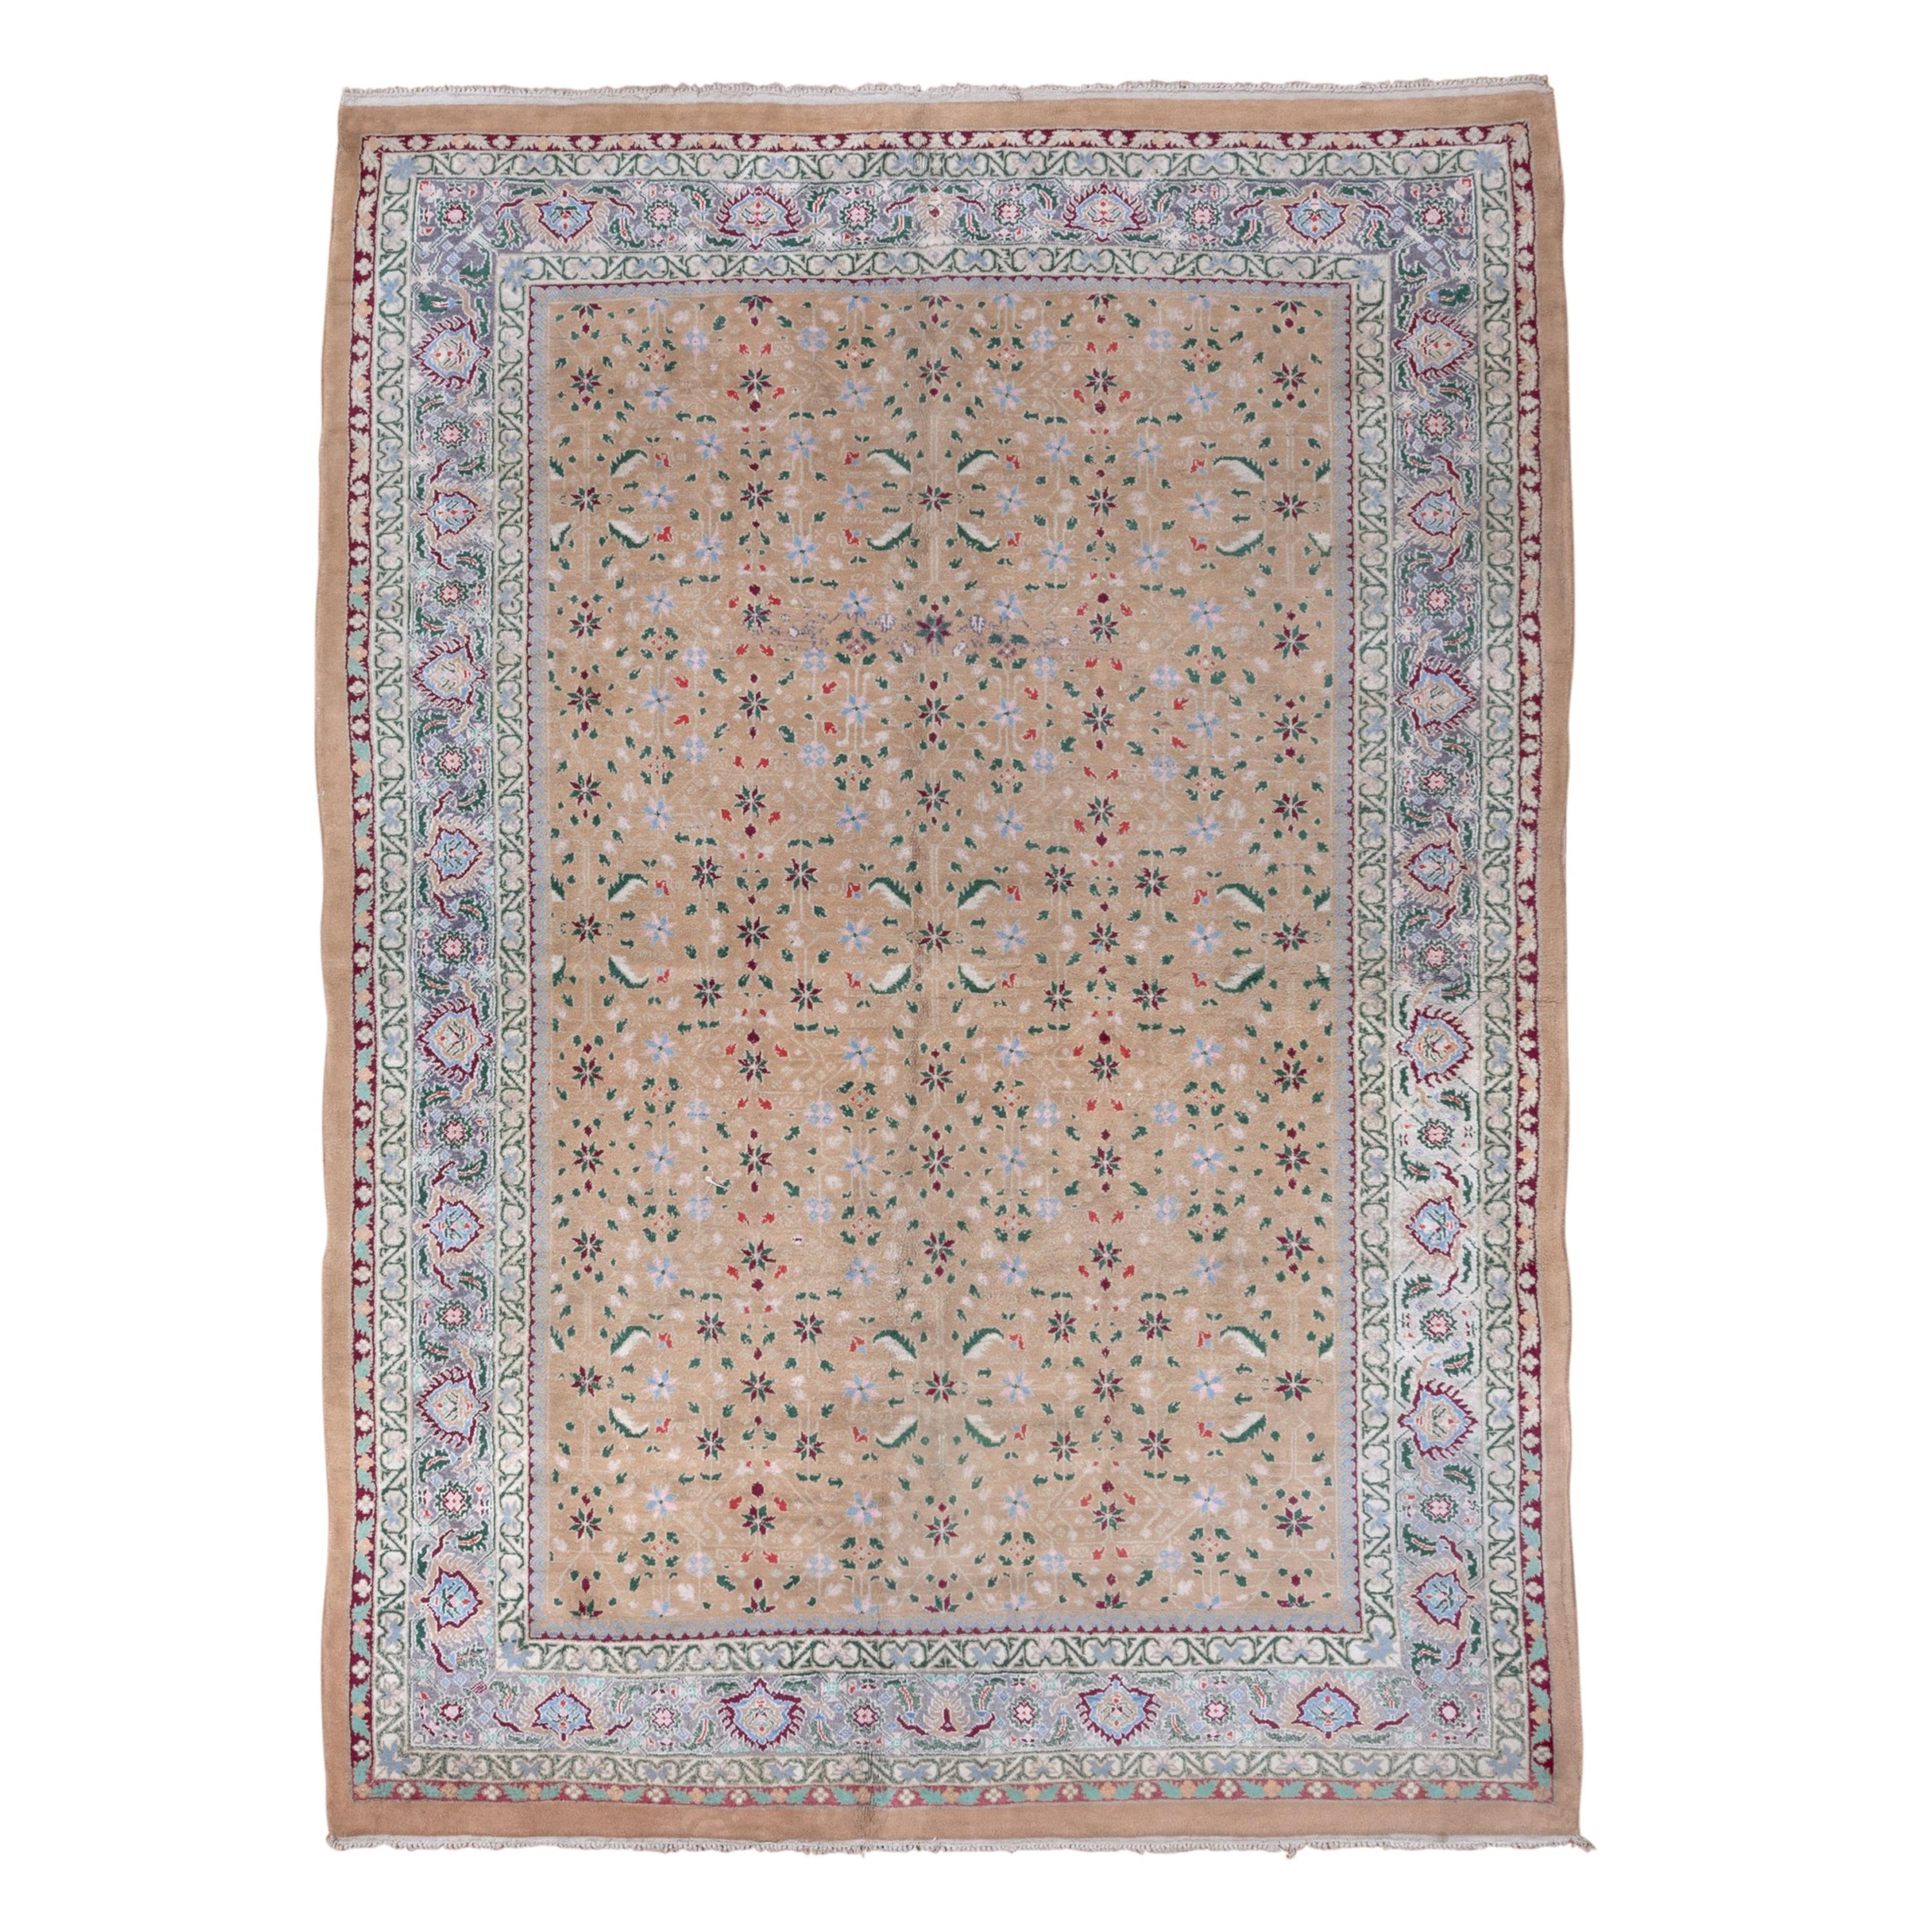 Authentique tapis indien Agra, entièrement à poils longs, champ beige, magnifique bordure